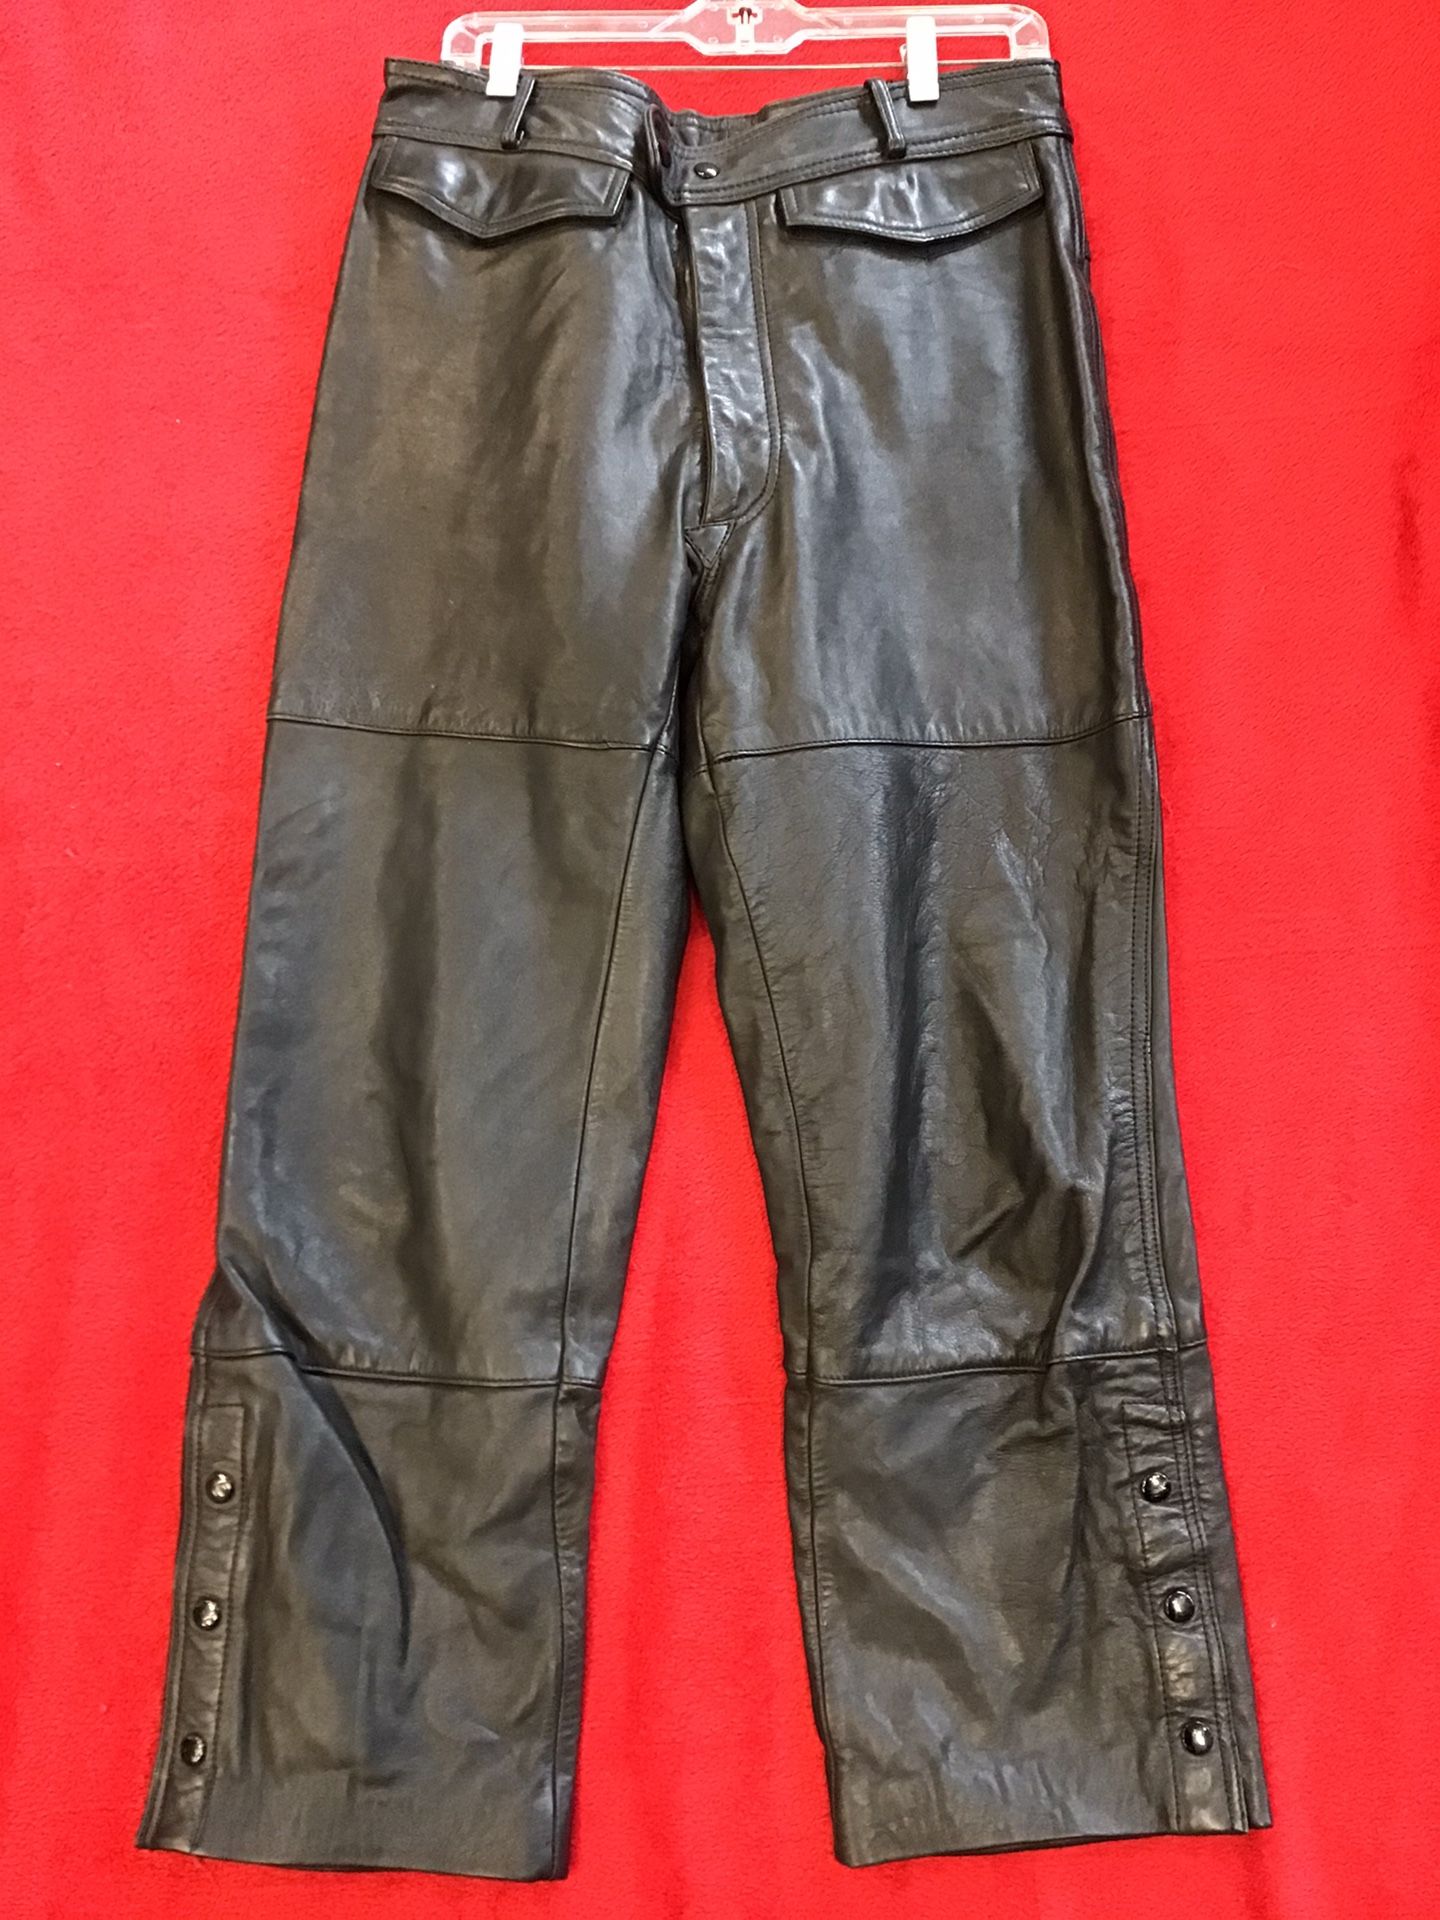 Harley Davidson biker leather pants